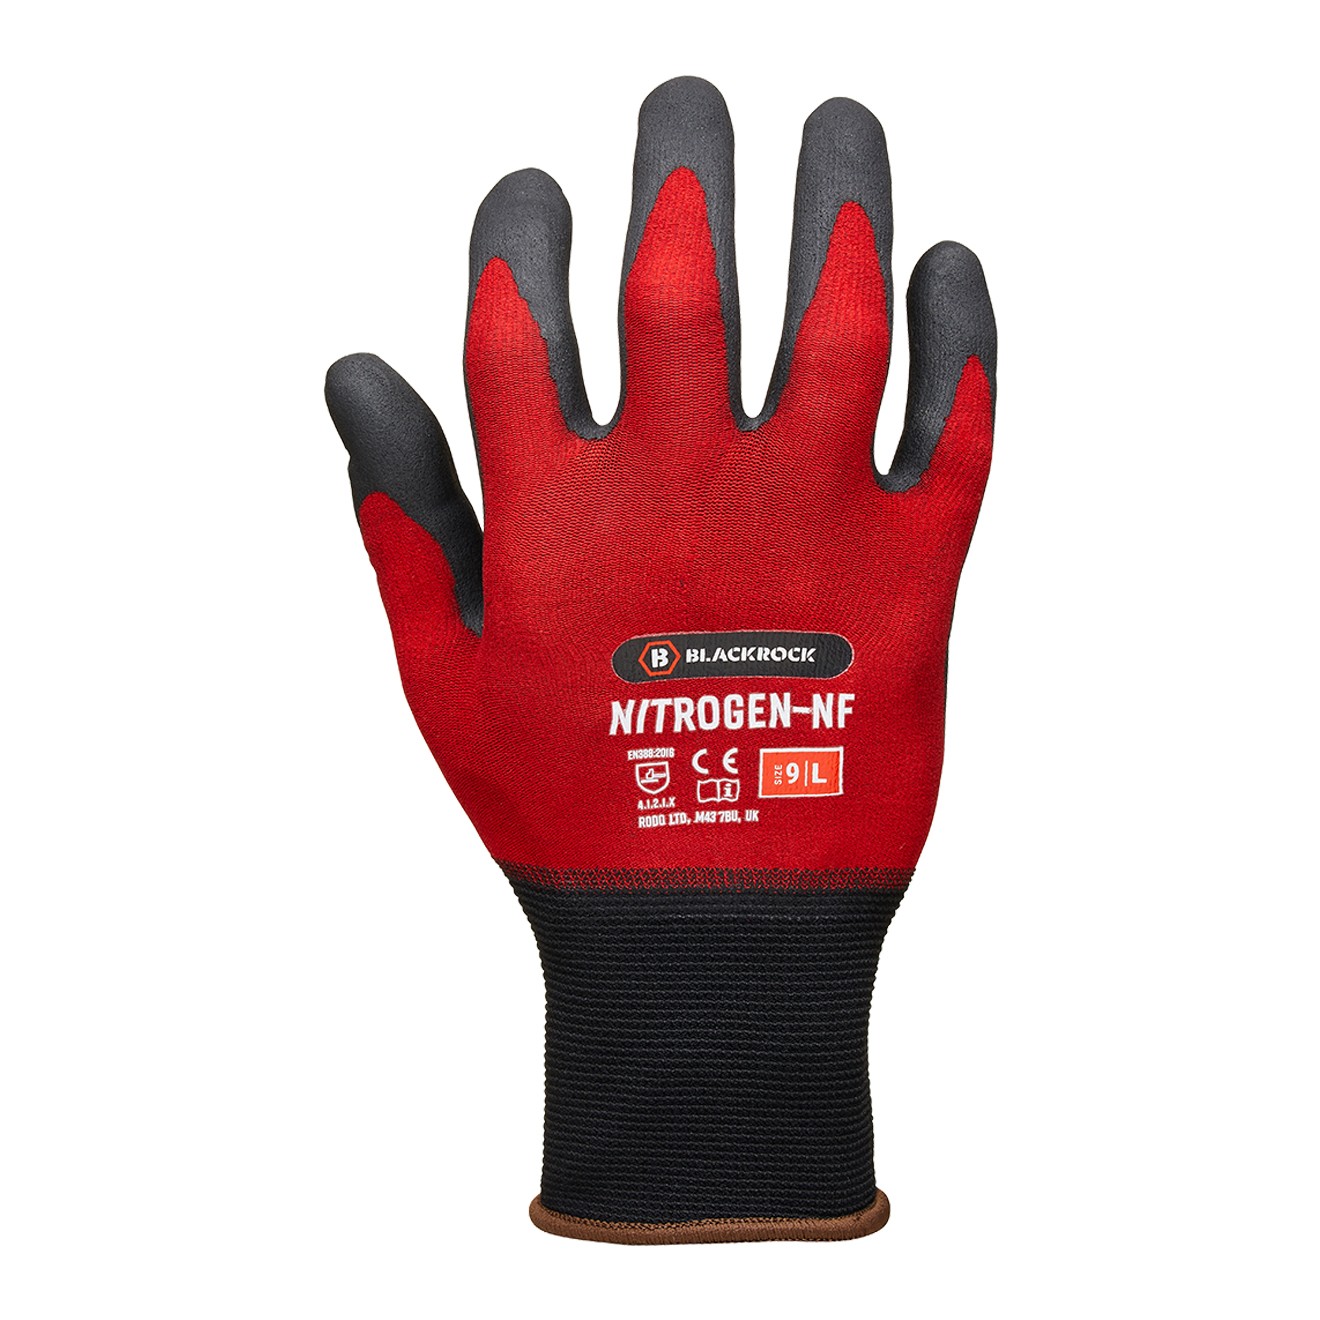 Nitrogen-NF Work Glove